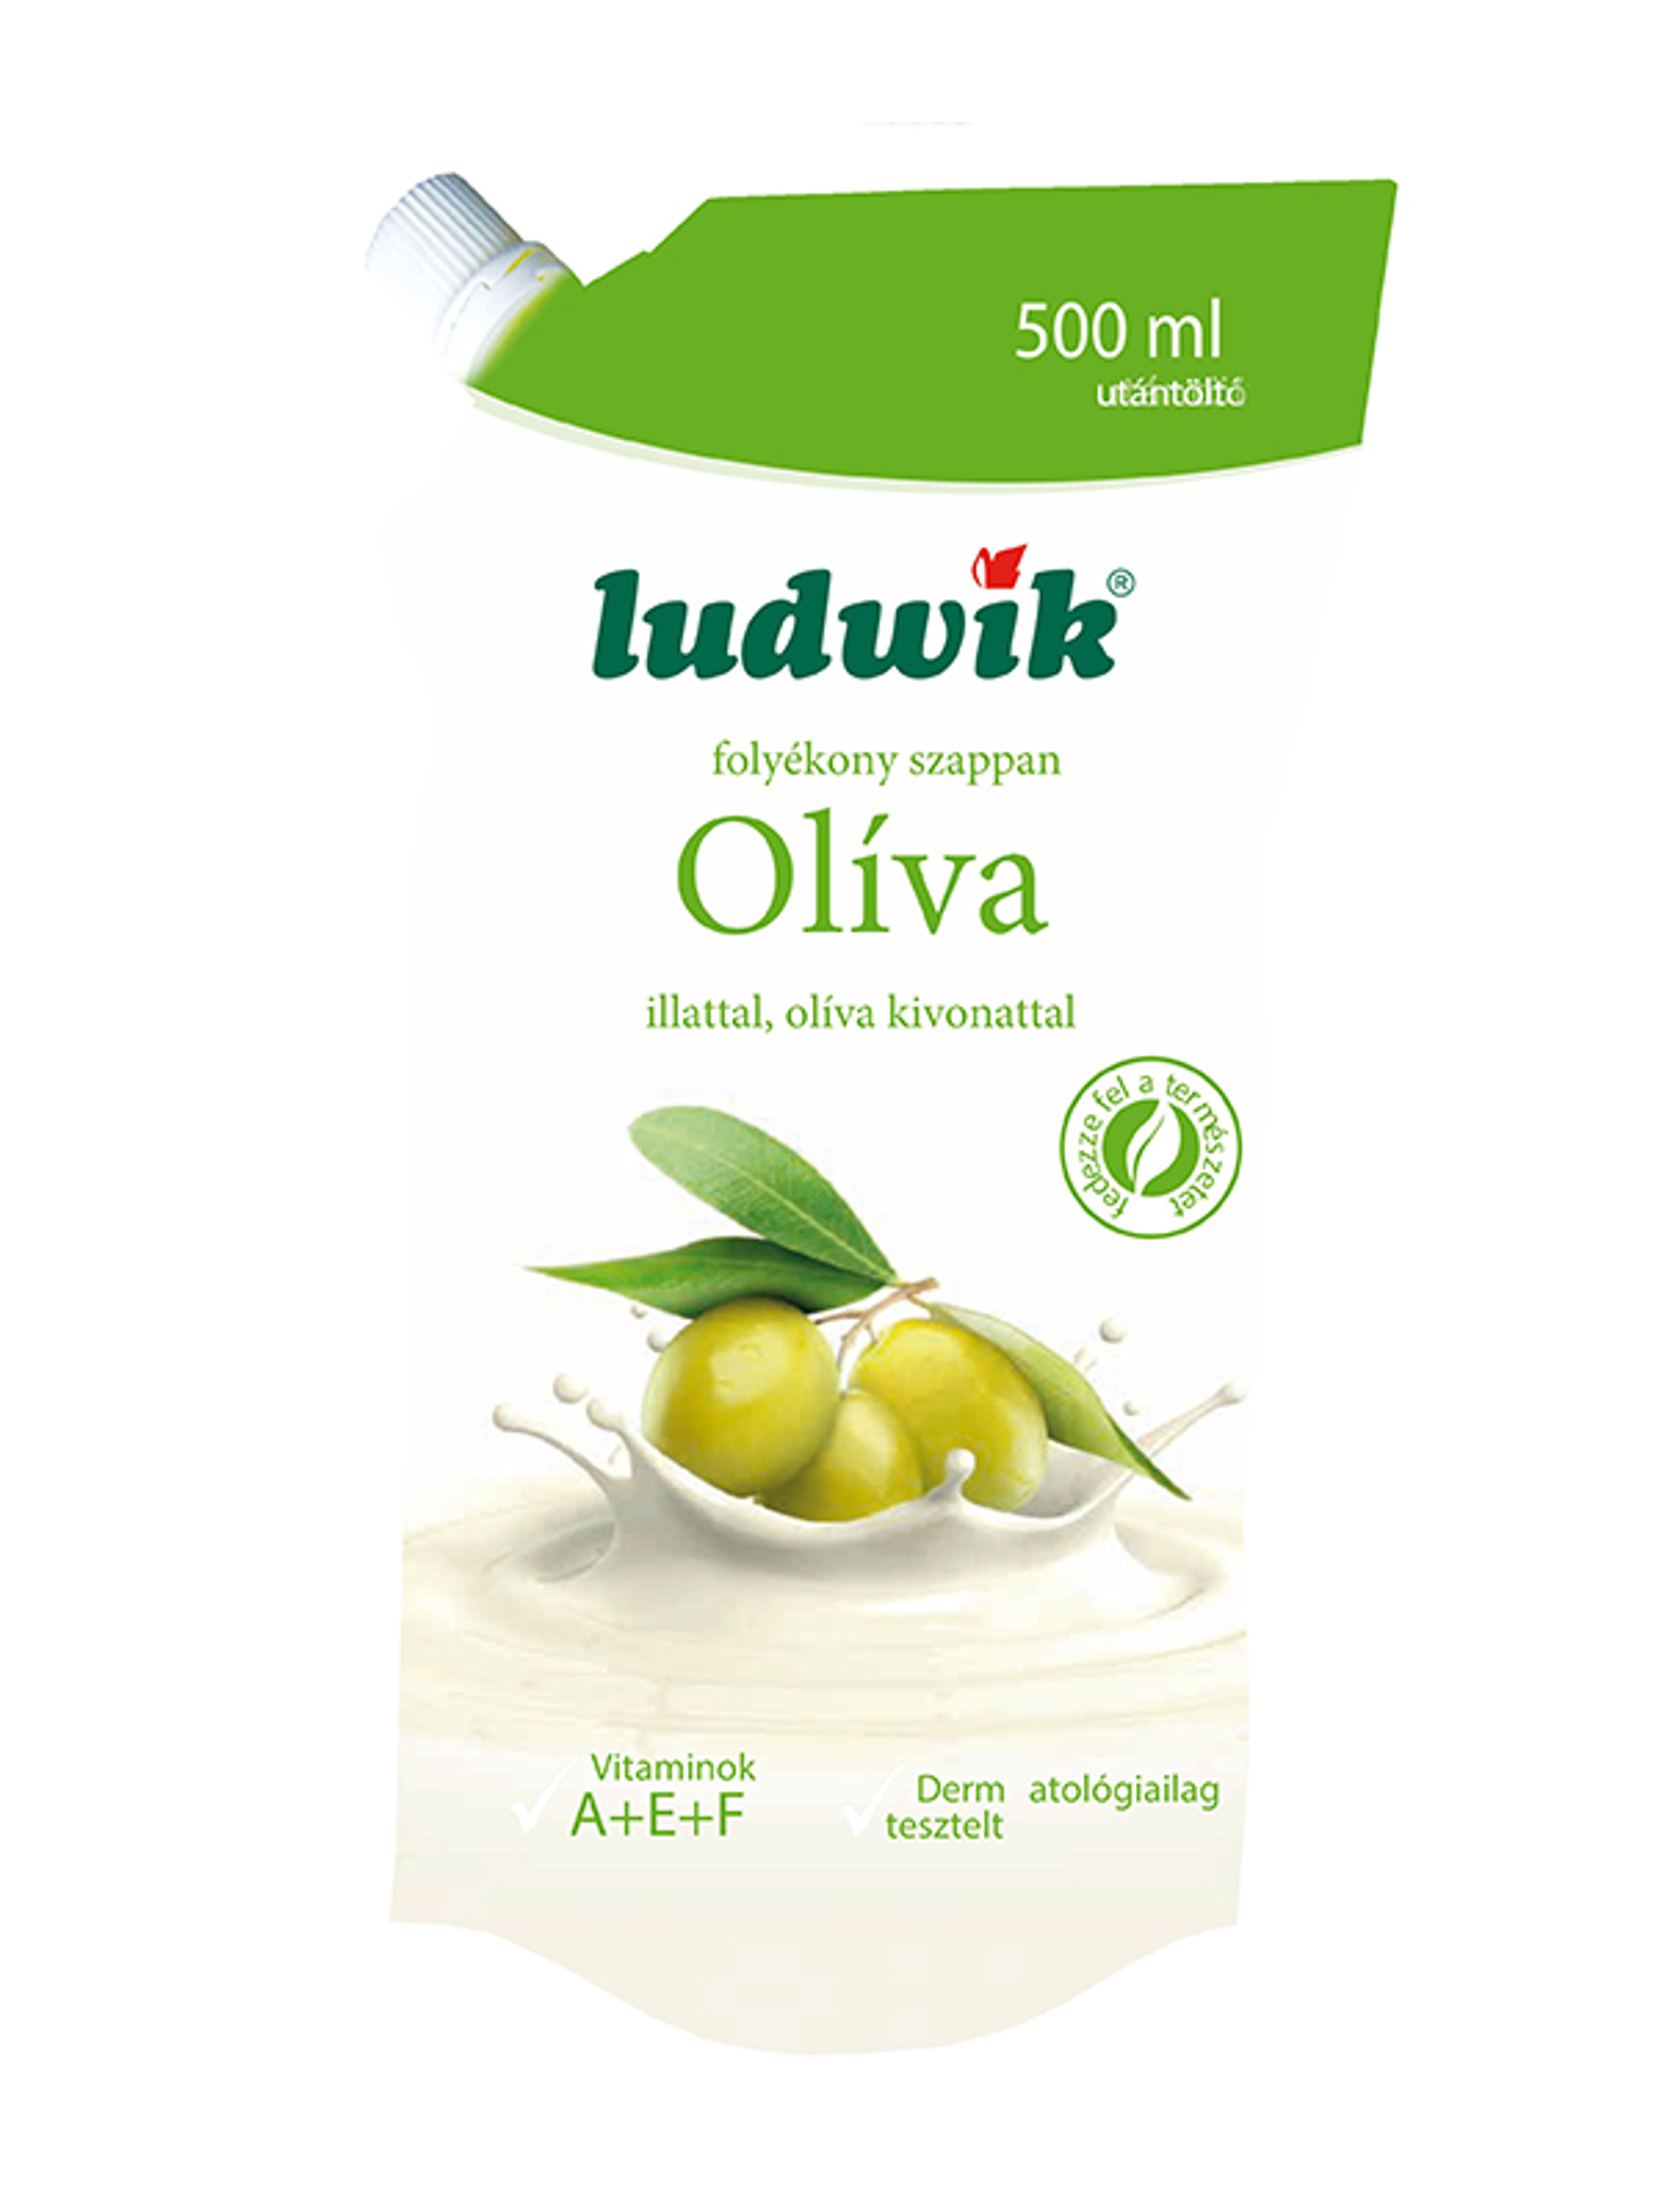 Ludwik folyékony szappan utántöltő oliva - 500 ml-1